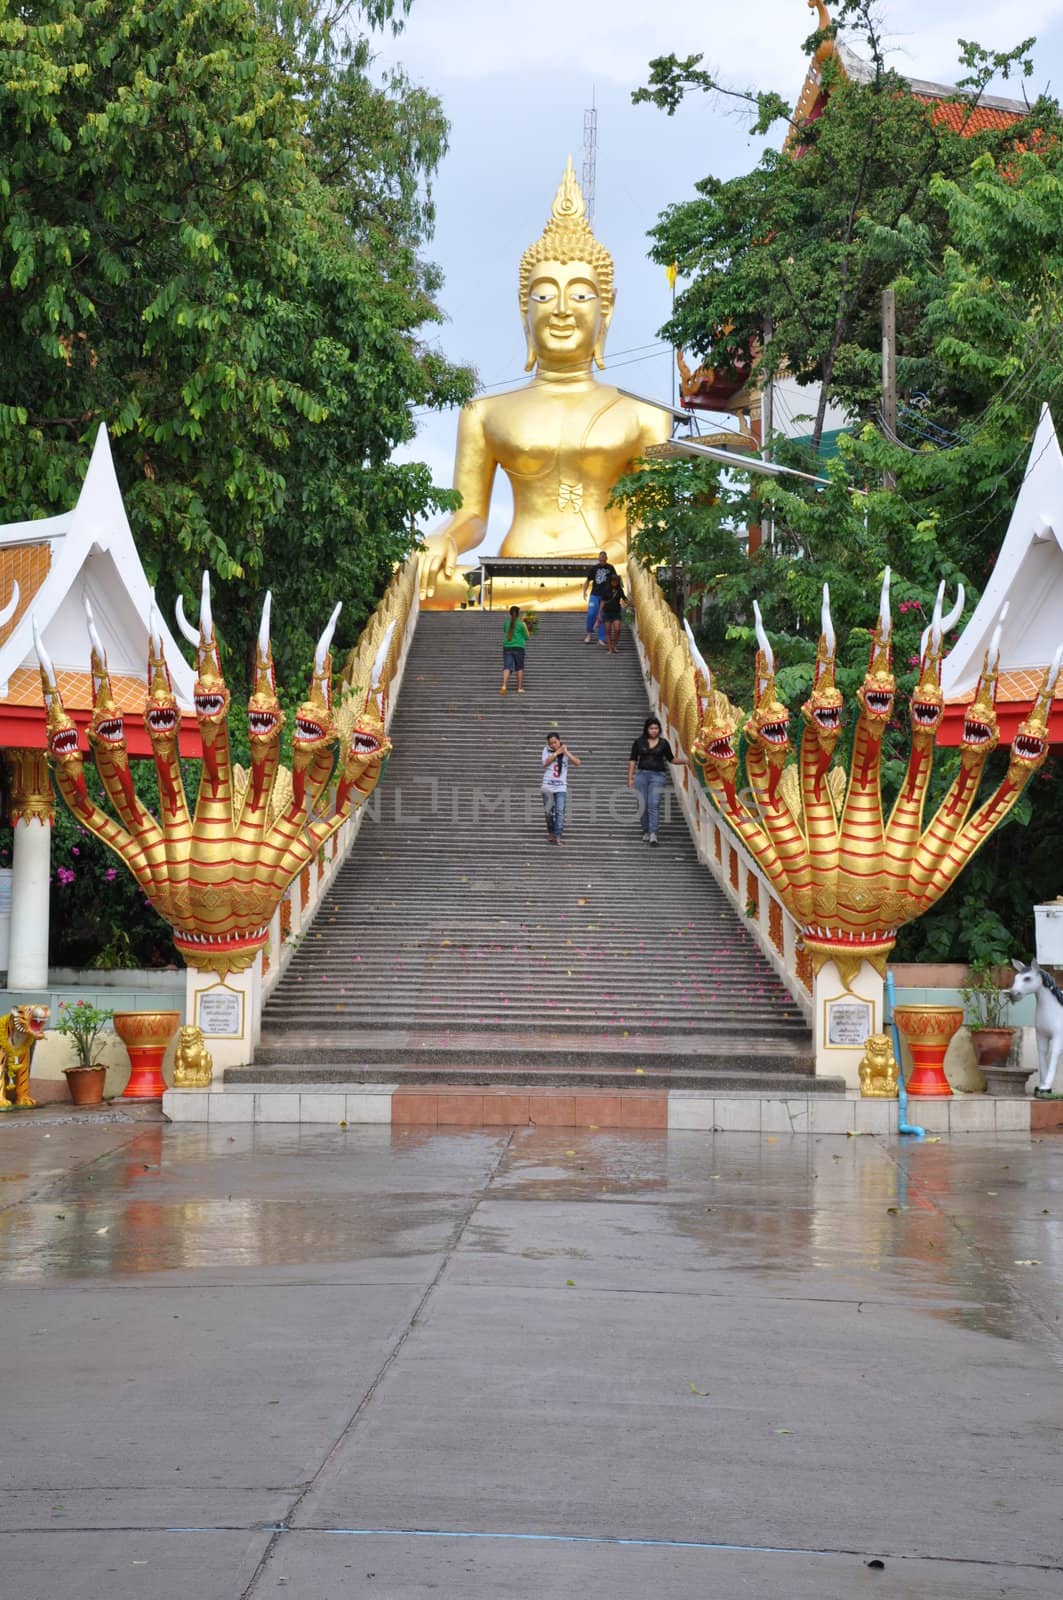 Big Buddha in Pattaya, Thailand by sainaniritu